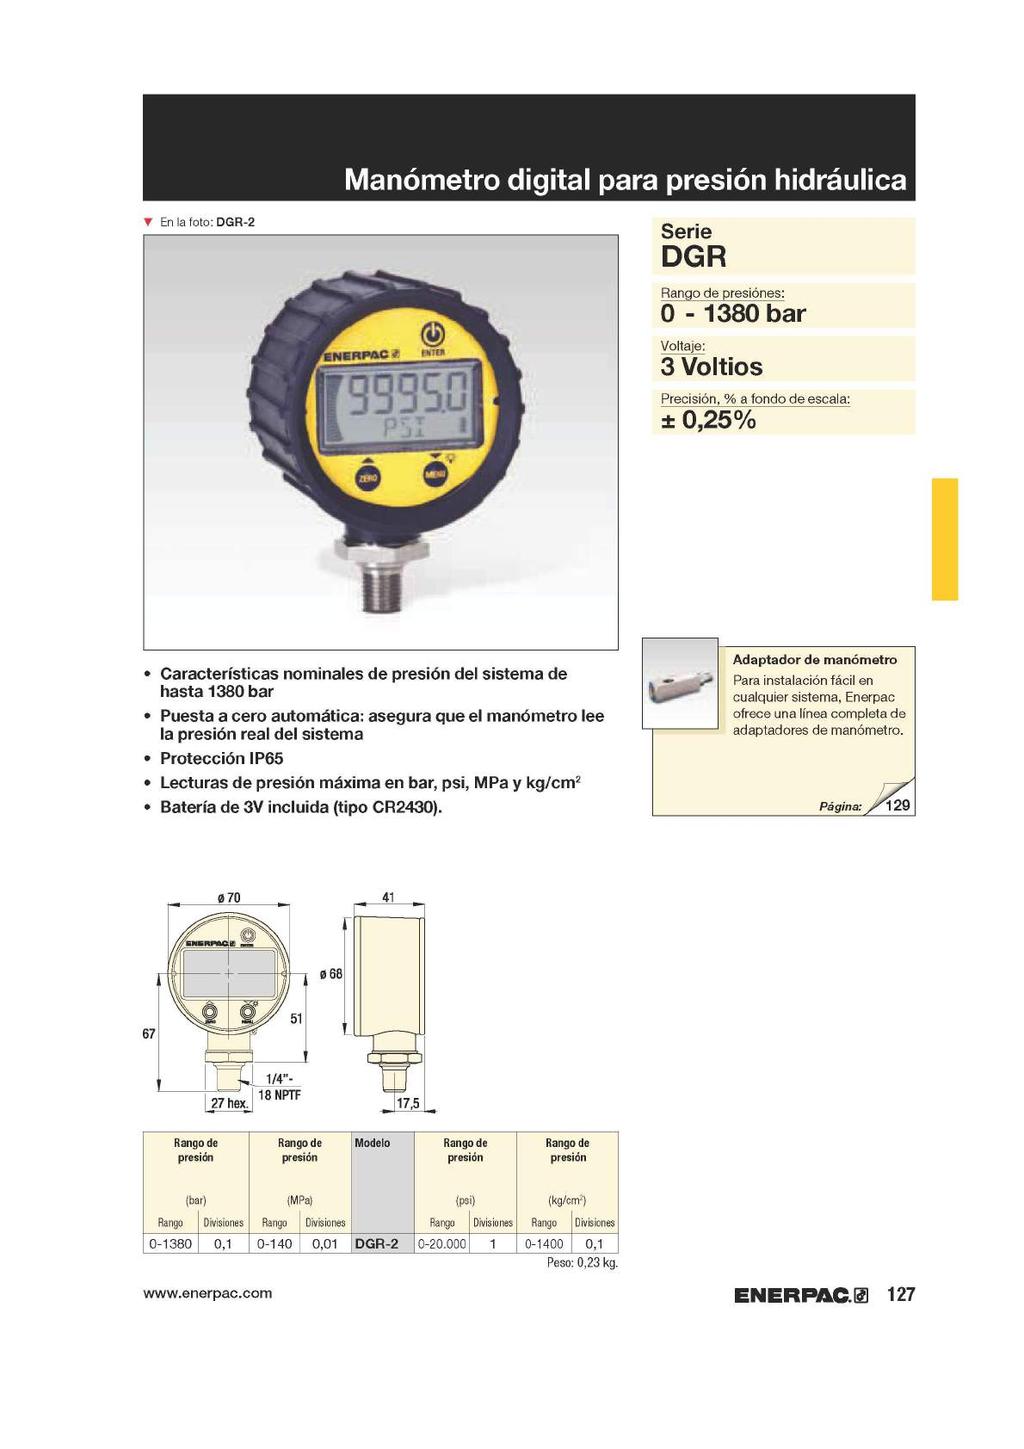 Manómetro digital para presión hidráulica T En la foto: DGR-2 Serie DGR Rango de presiónes: 0-1380 bar Voltaje: 3 Voltios Precisión, % a fondo de escala: ± 0,25% Características nominales de presión